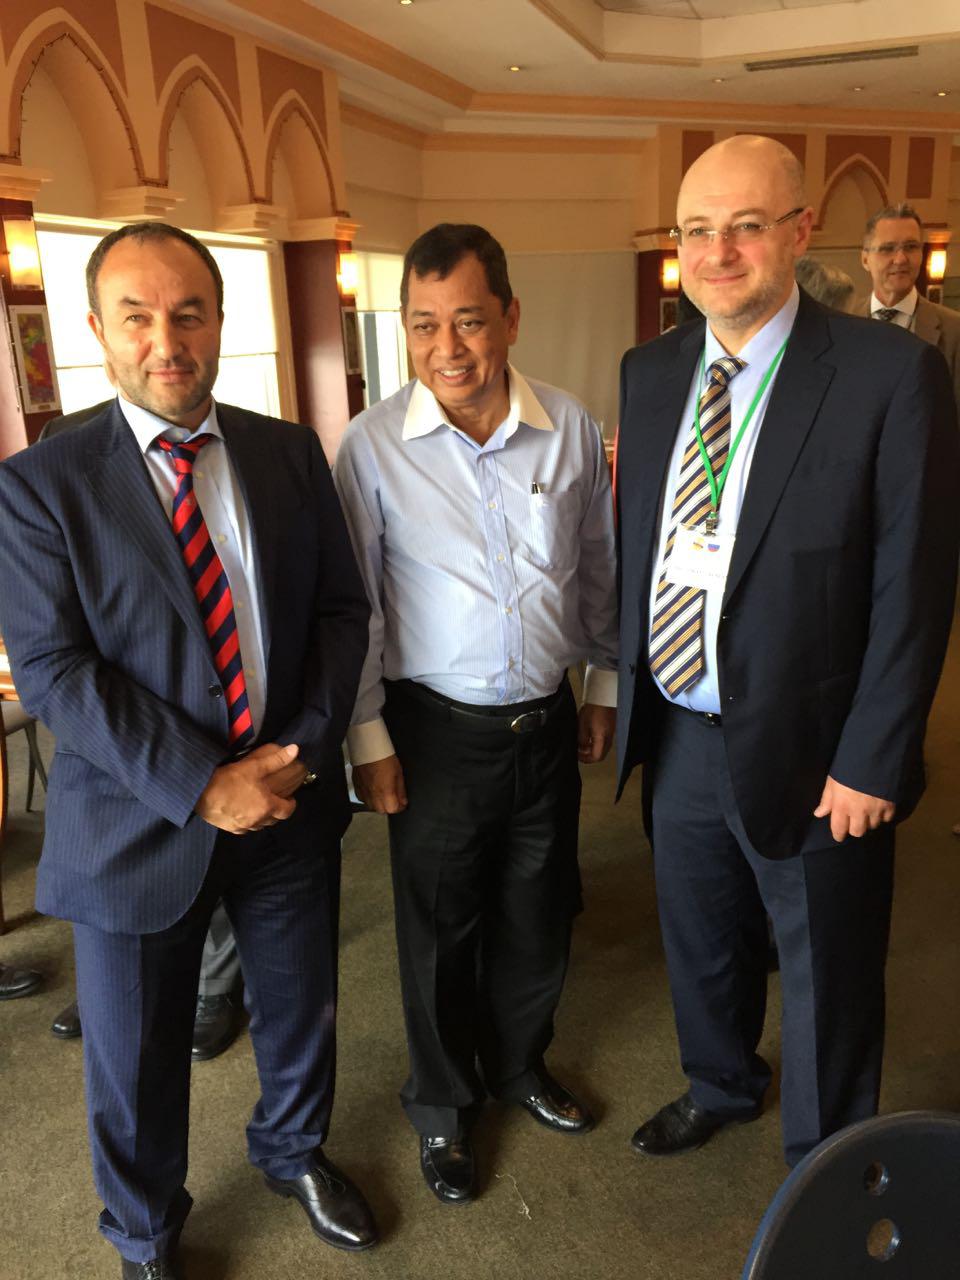 Учредители компании Батчаев А.М. и Токаев Р.Б. с министром промышленности и энергетики Хаджи Мохаммадом Ясмином бин Хаджи Умаром